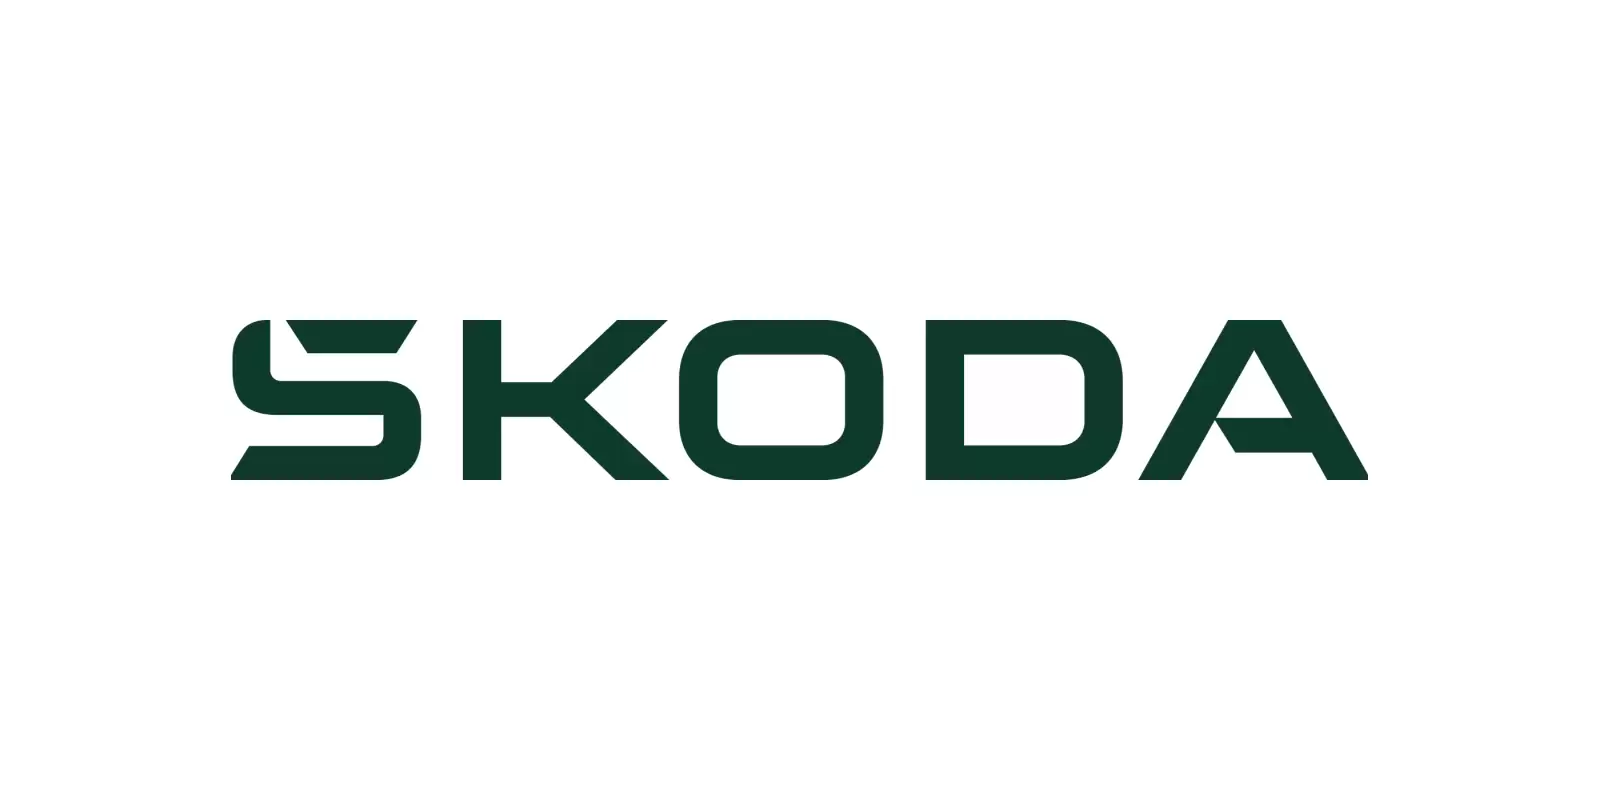 Skoda tú eliges compra flexible financiación logo